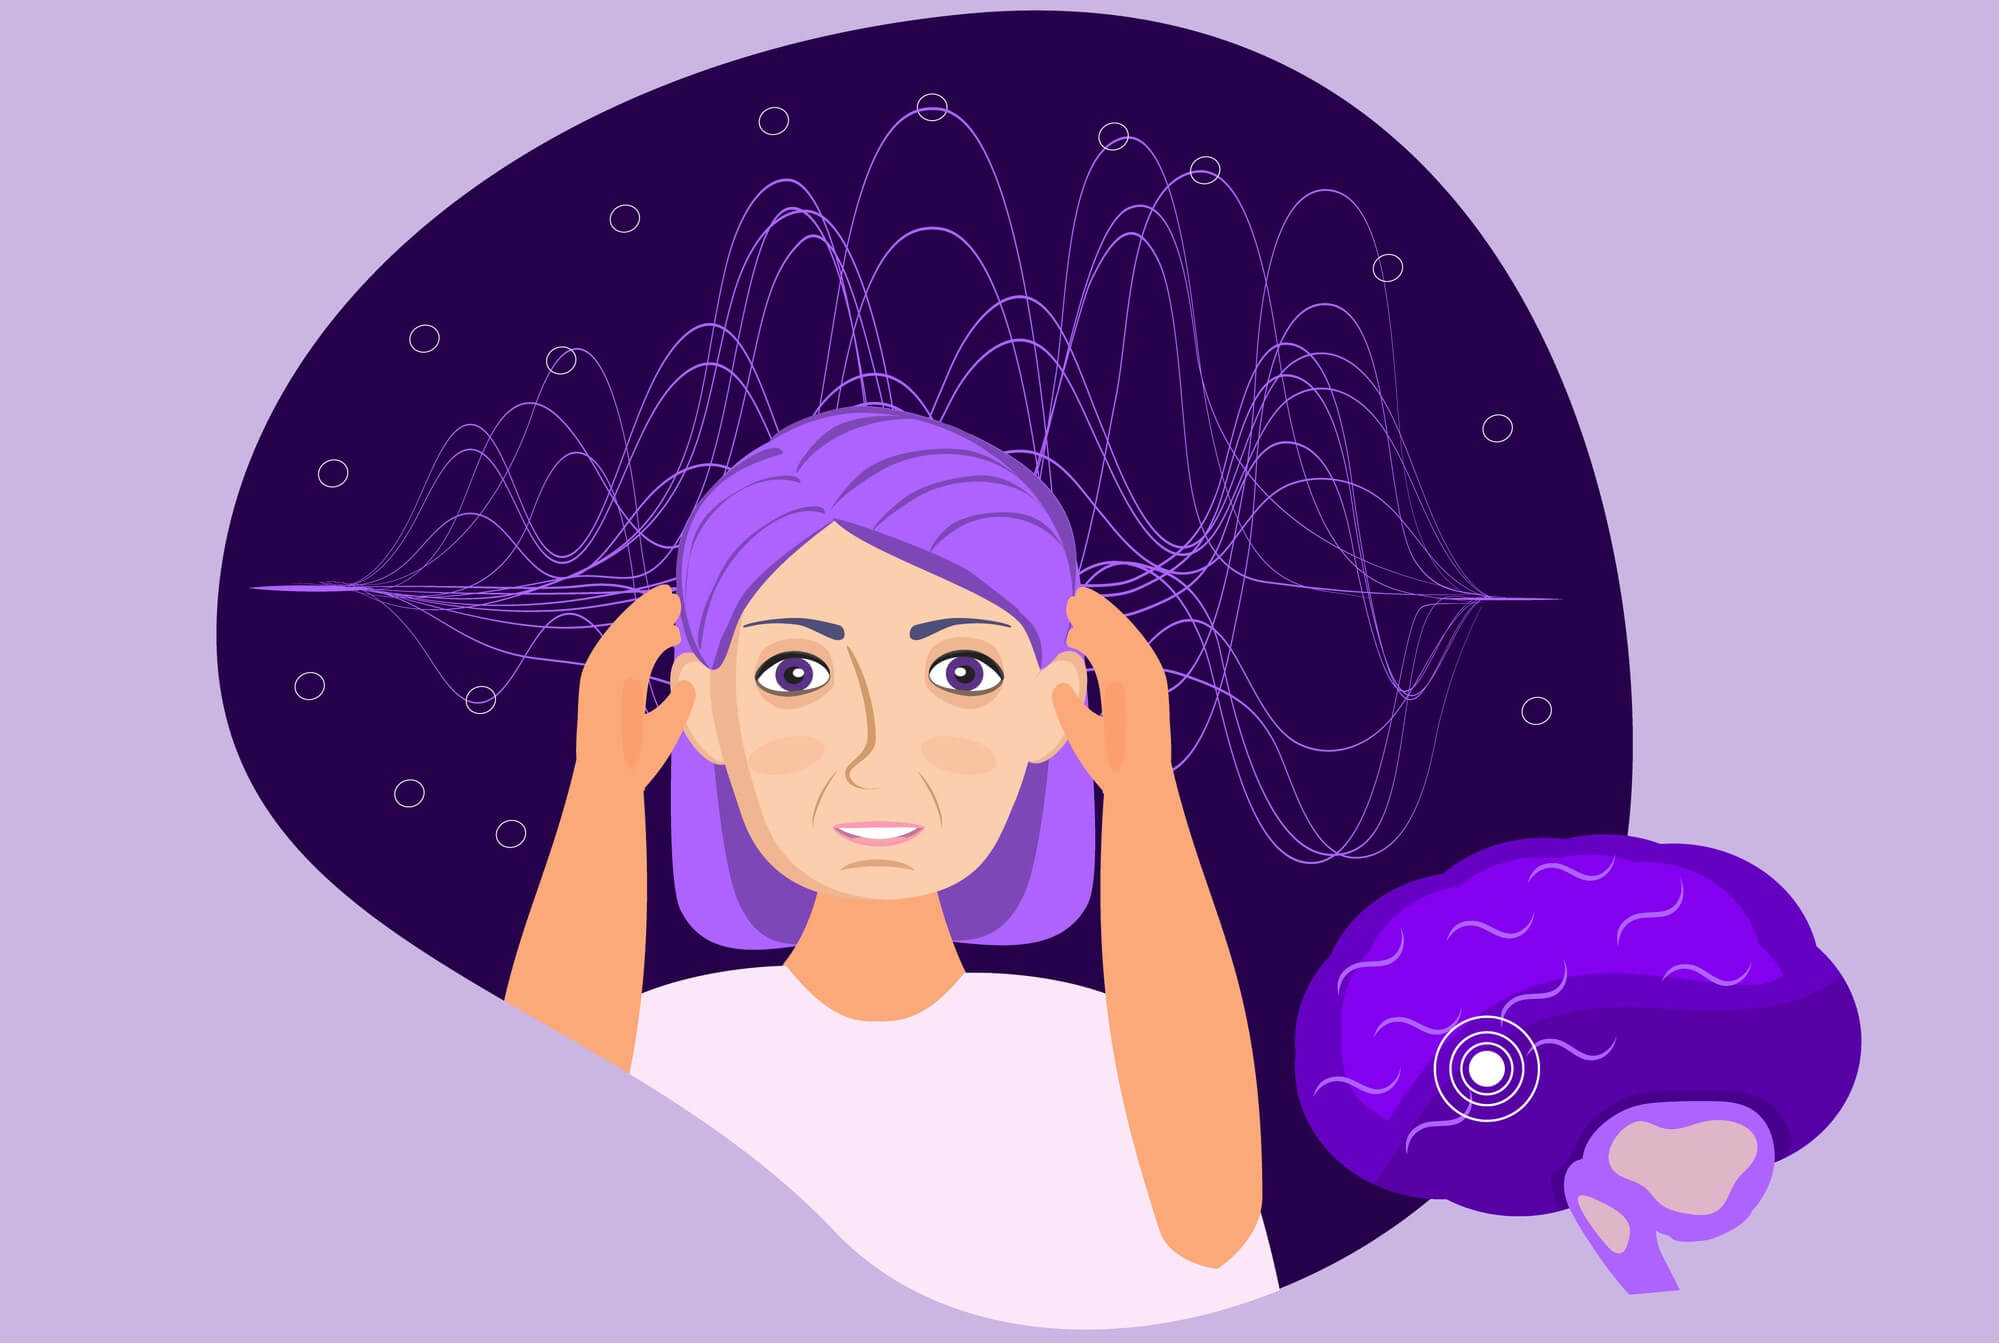 Existe relación entre sueño y epilepsia? - Con R de Ruido